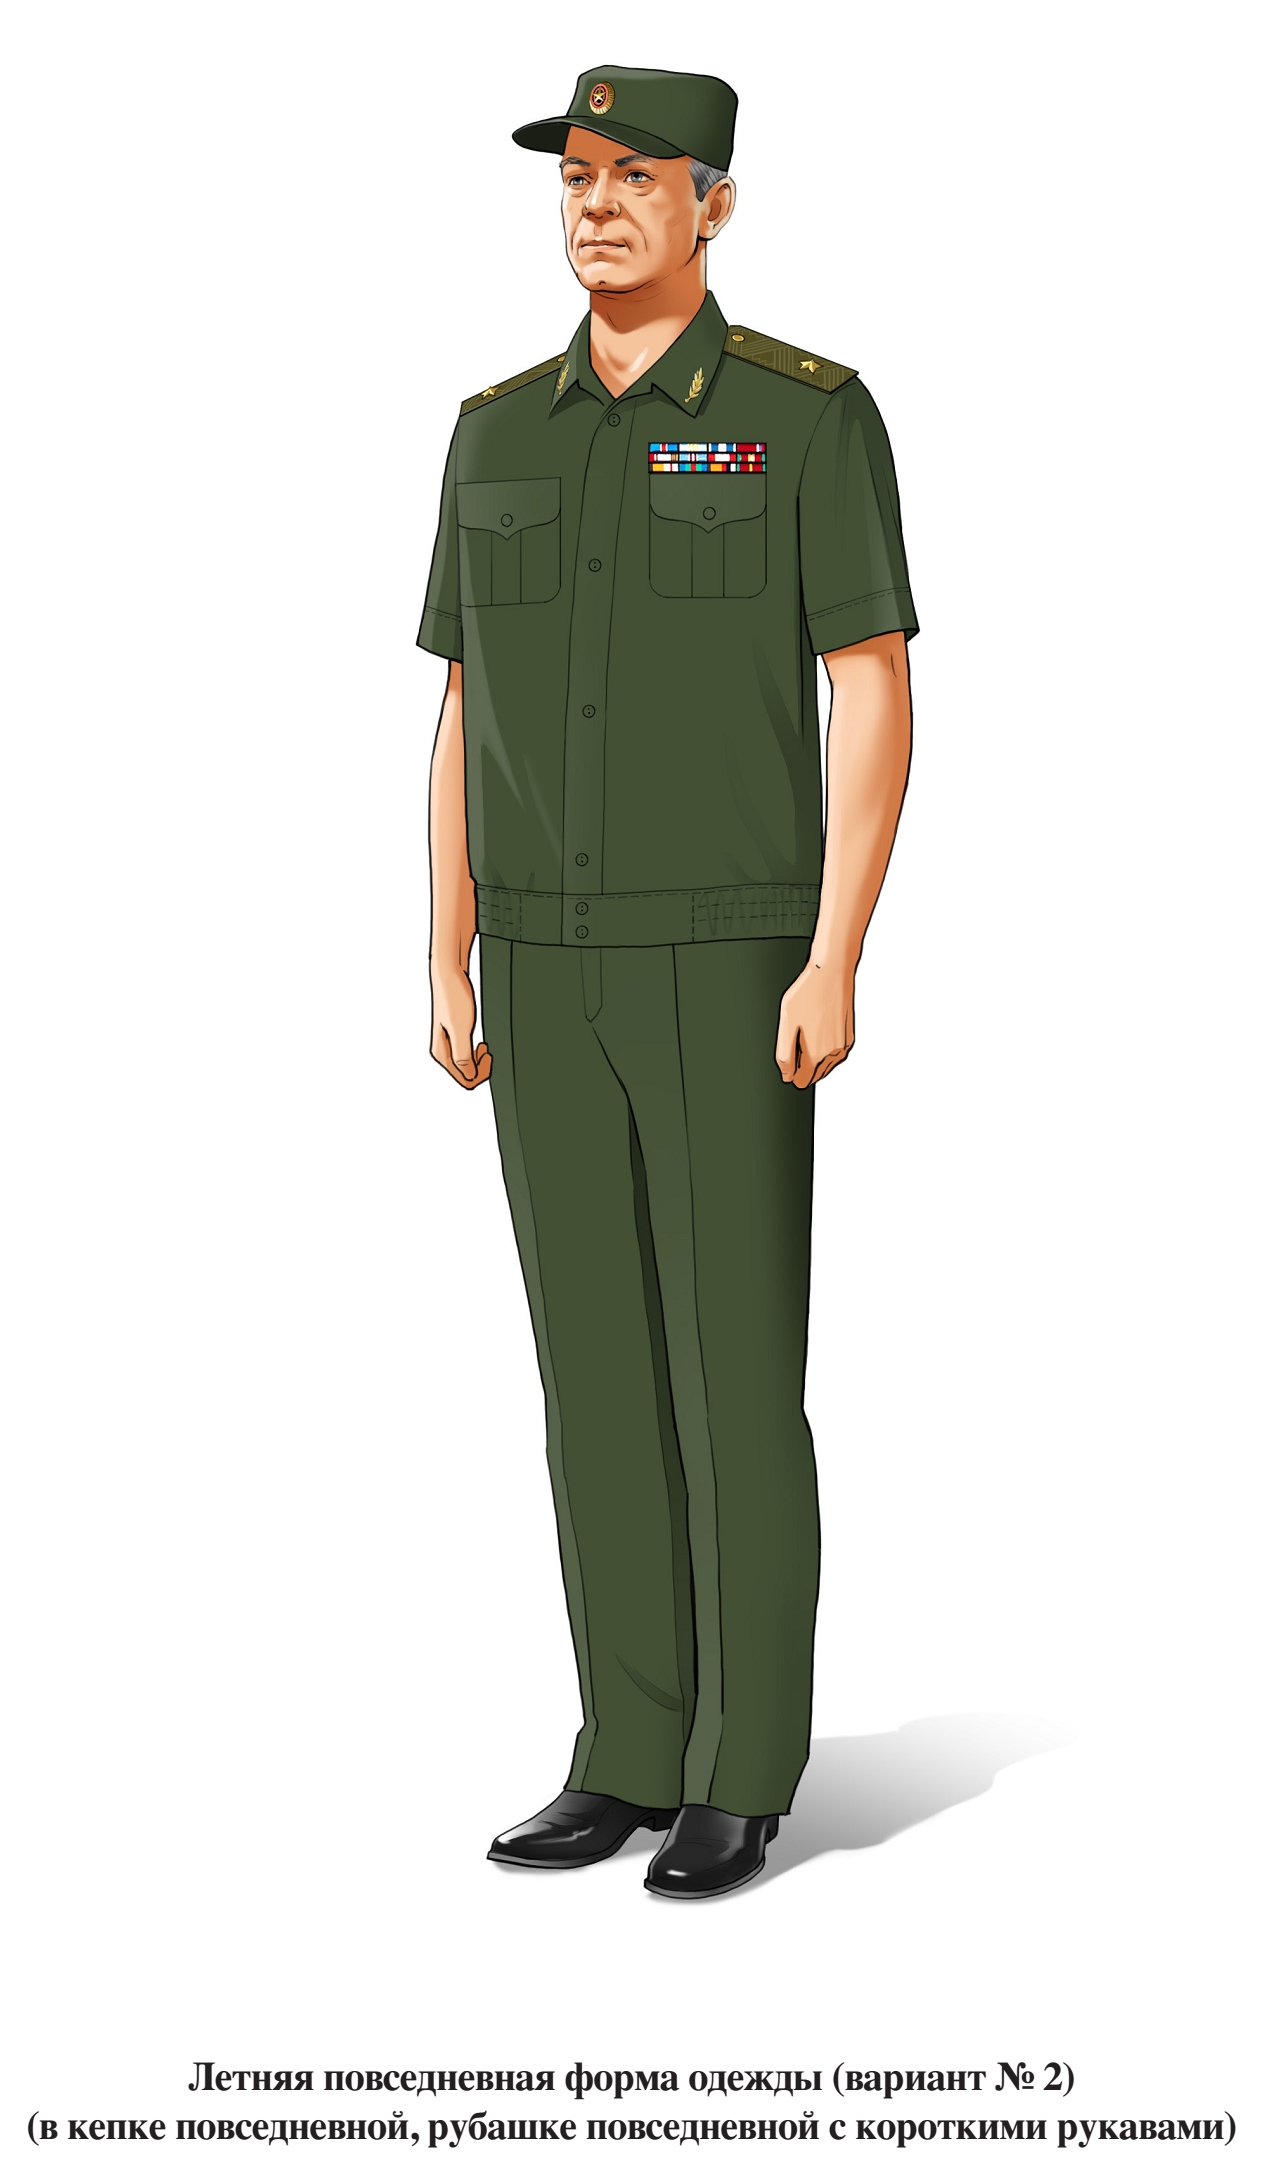 Генерал, летняя повседневная форма, в повседневной рубашке с коротким рукавом и в кепке